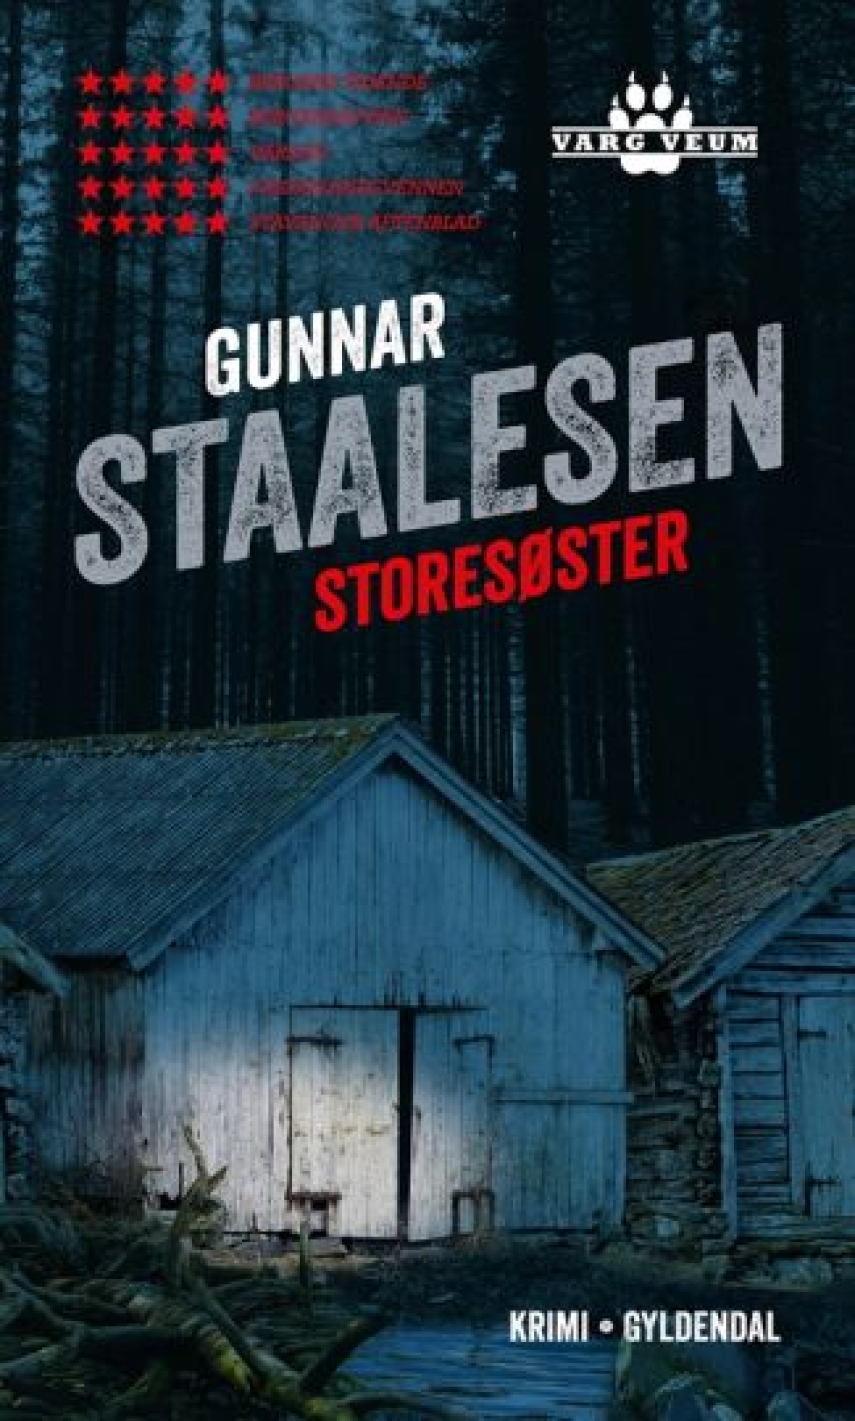 Gunnar Staalesen: Storesøster